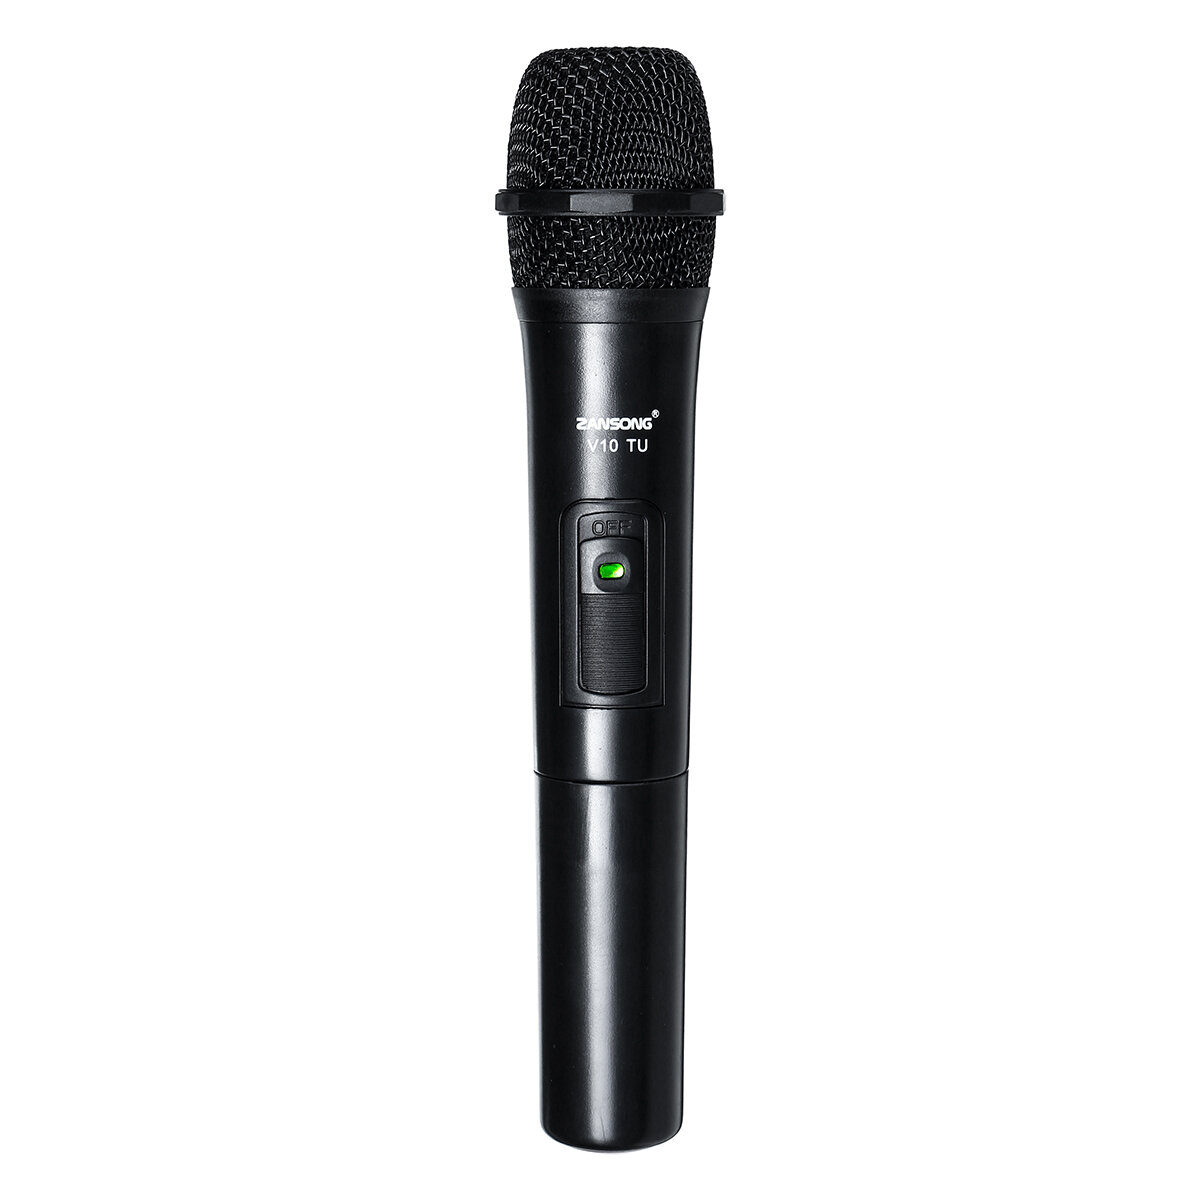 Karaoke profesional inalámbrico del sistema de micrófono inalámbrico Micrófono UHF con Receptor